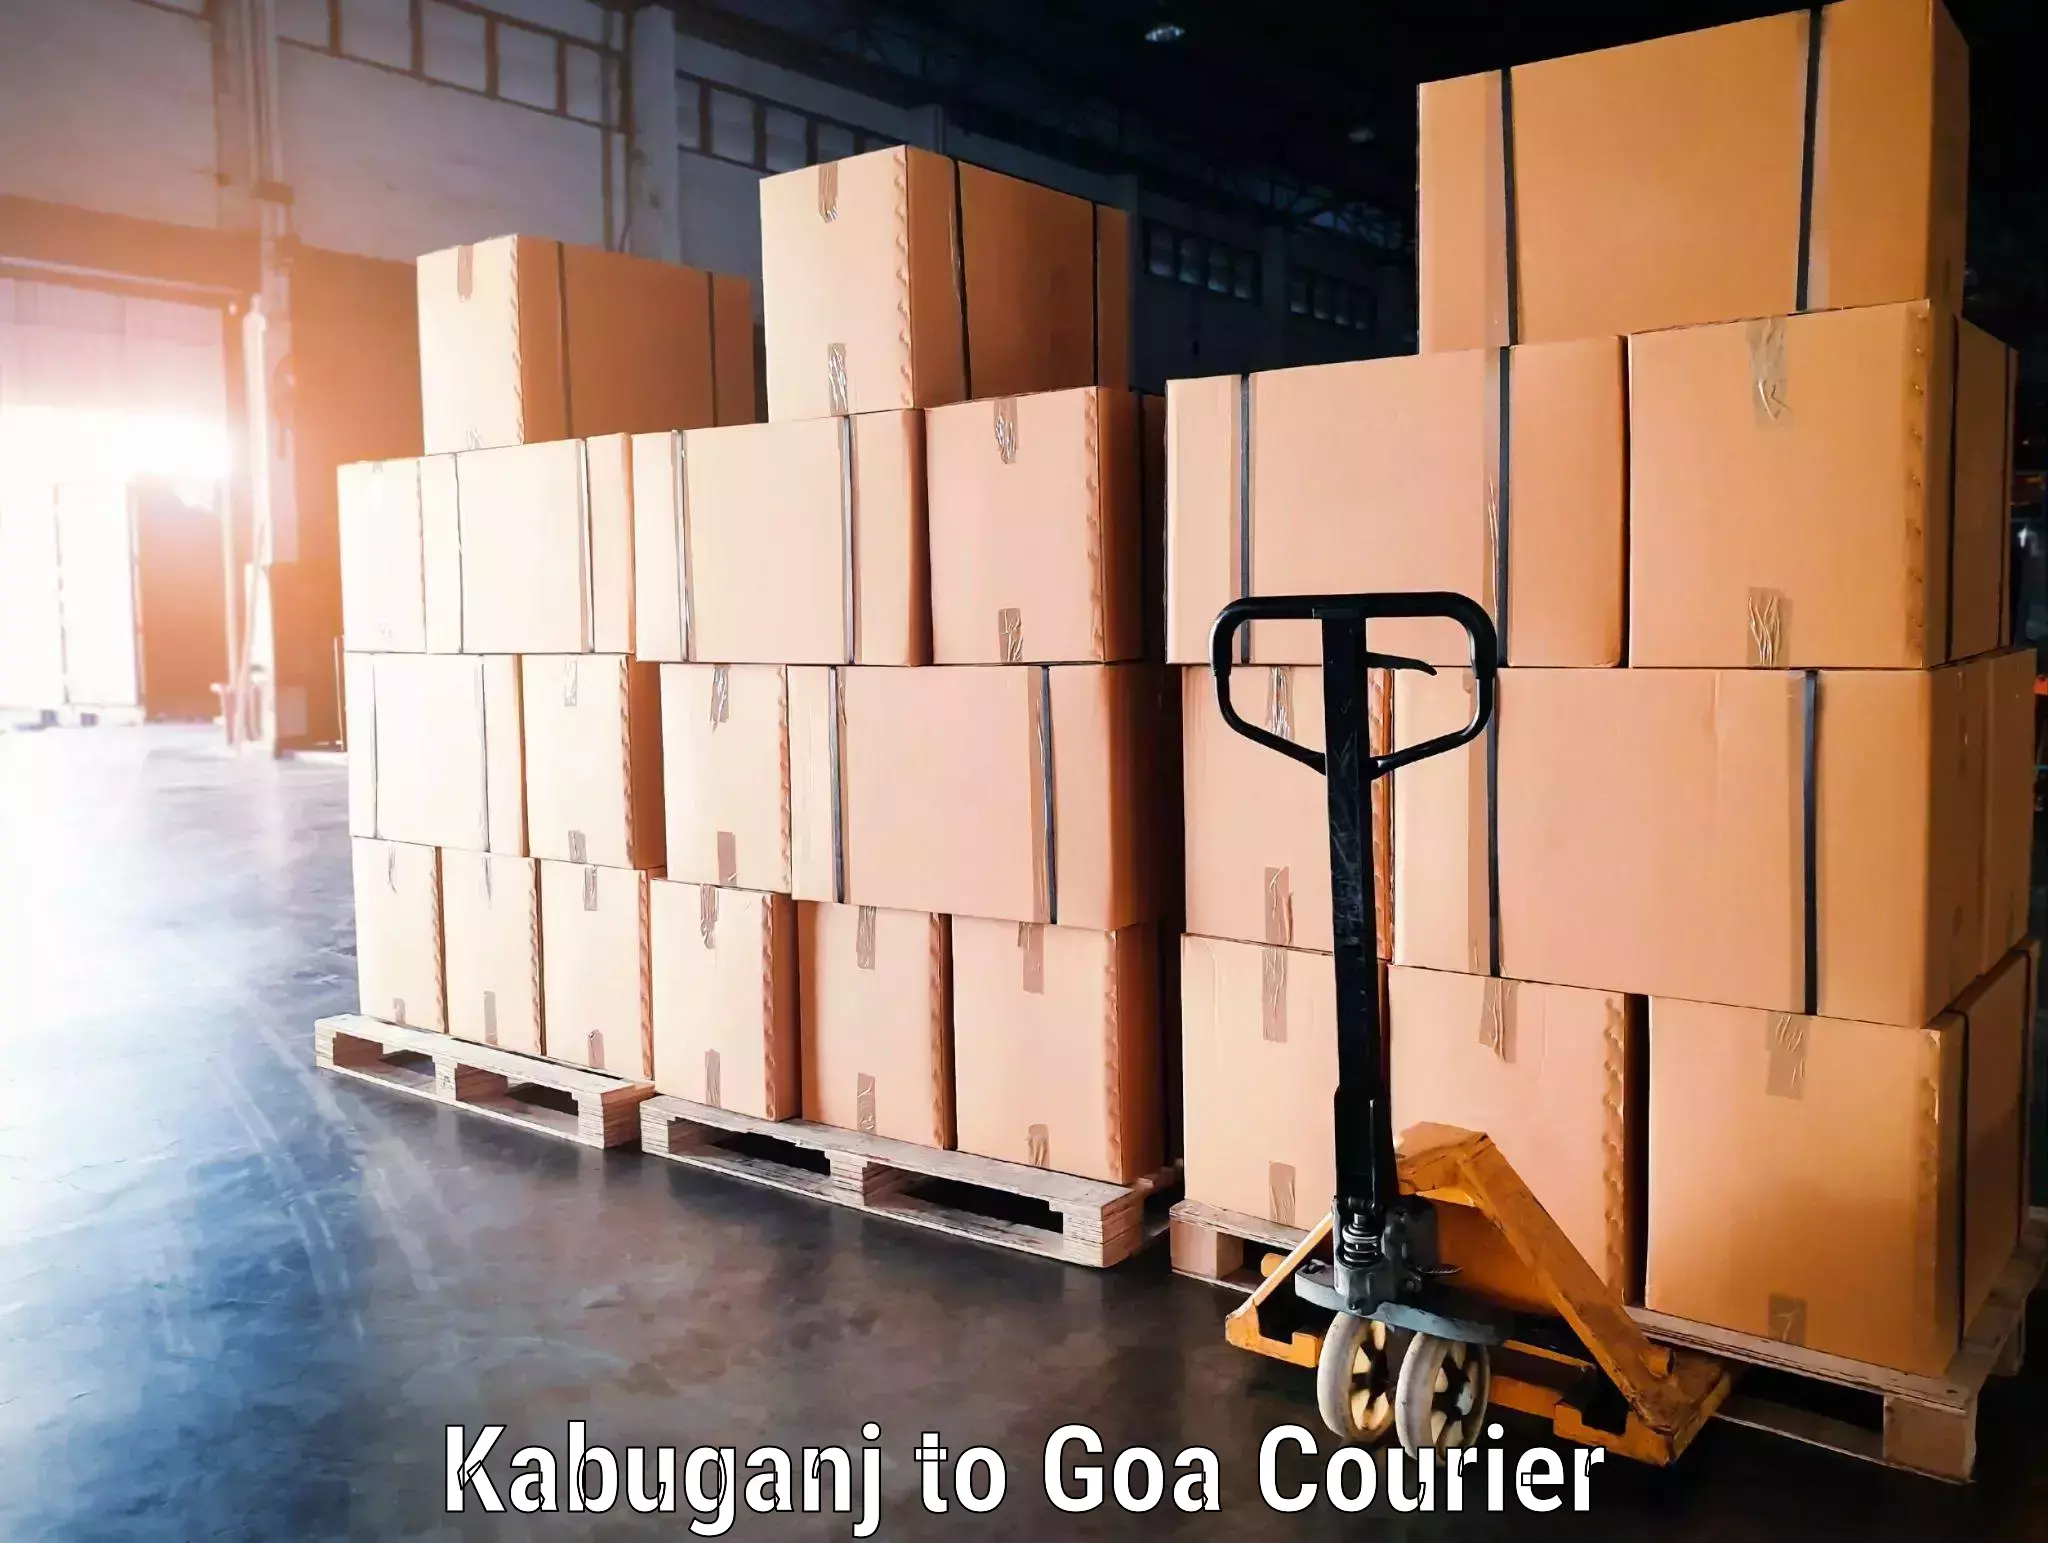 Baggage transport network Kabuganj to Goa University